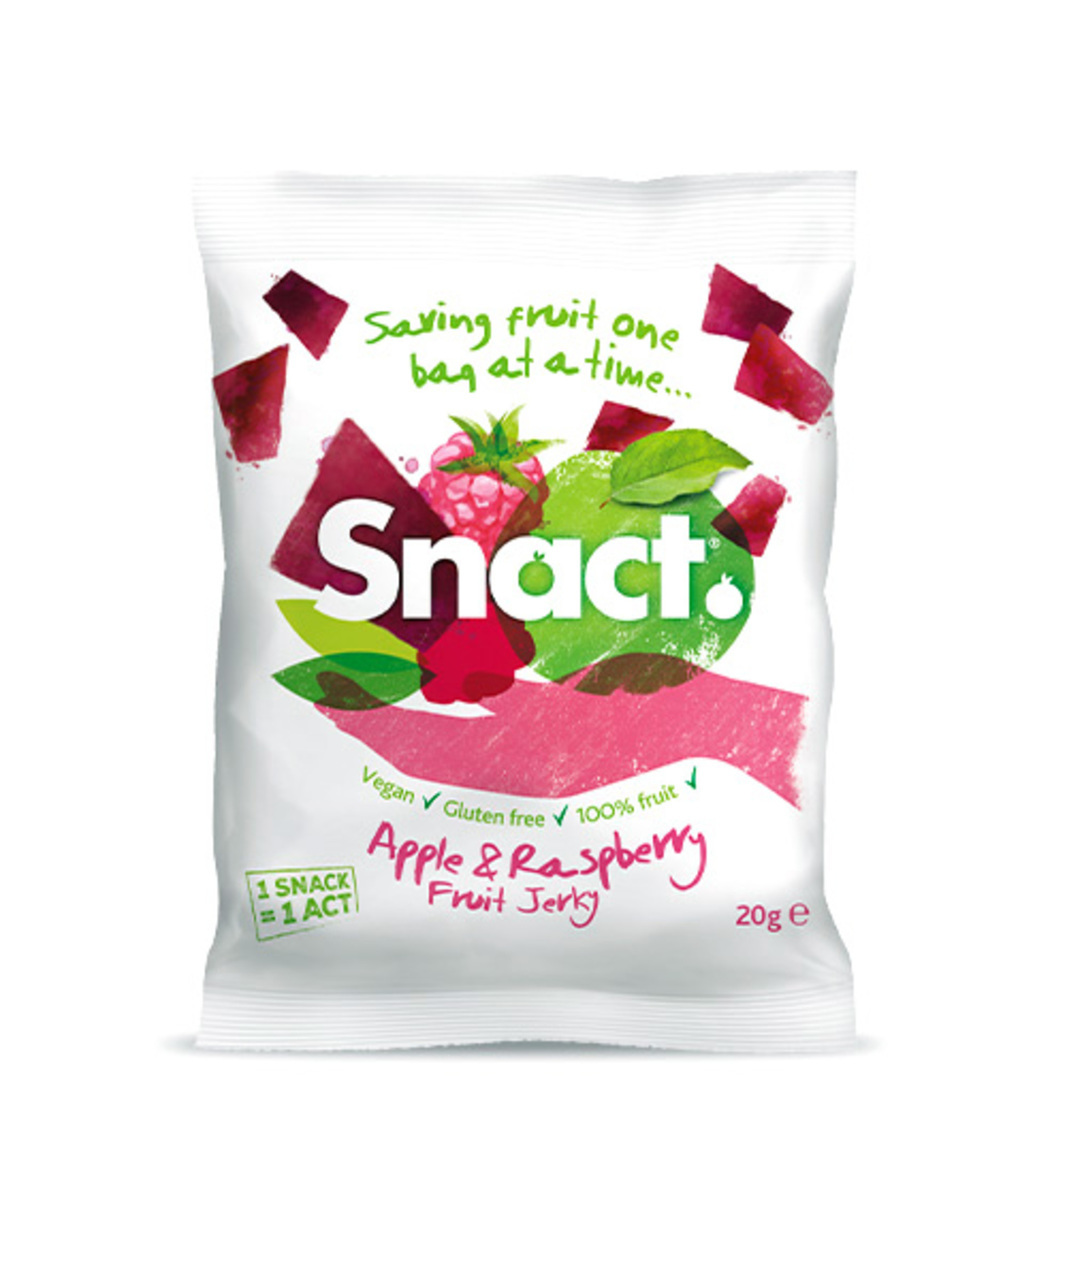 KC00328  74164.1495155053 - Des snacks de fruits contre les déchets alimentaires - Snact